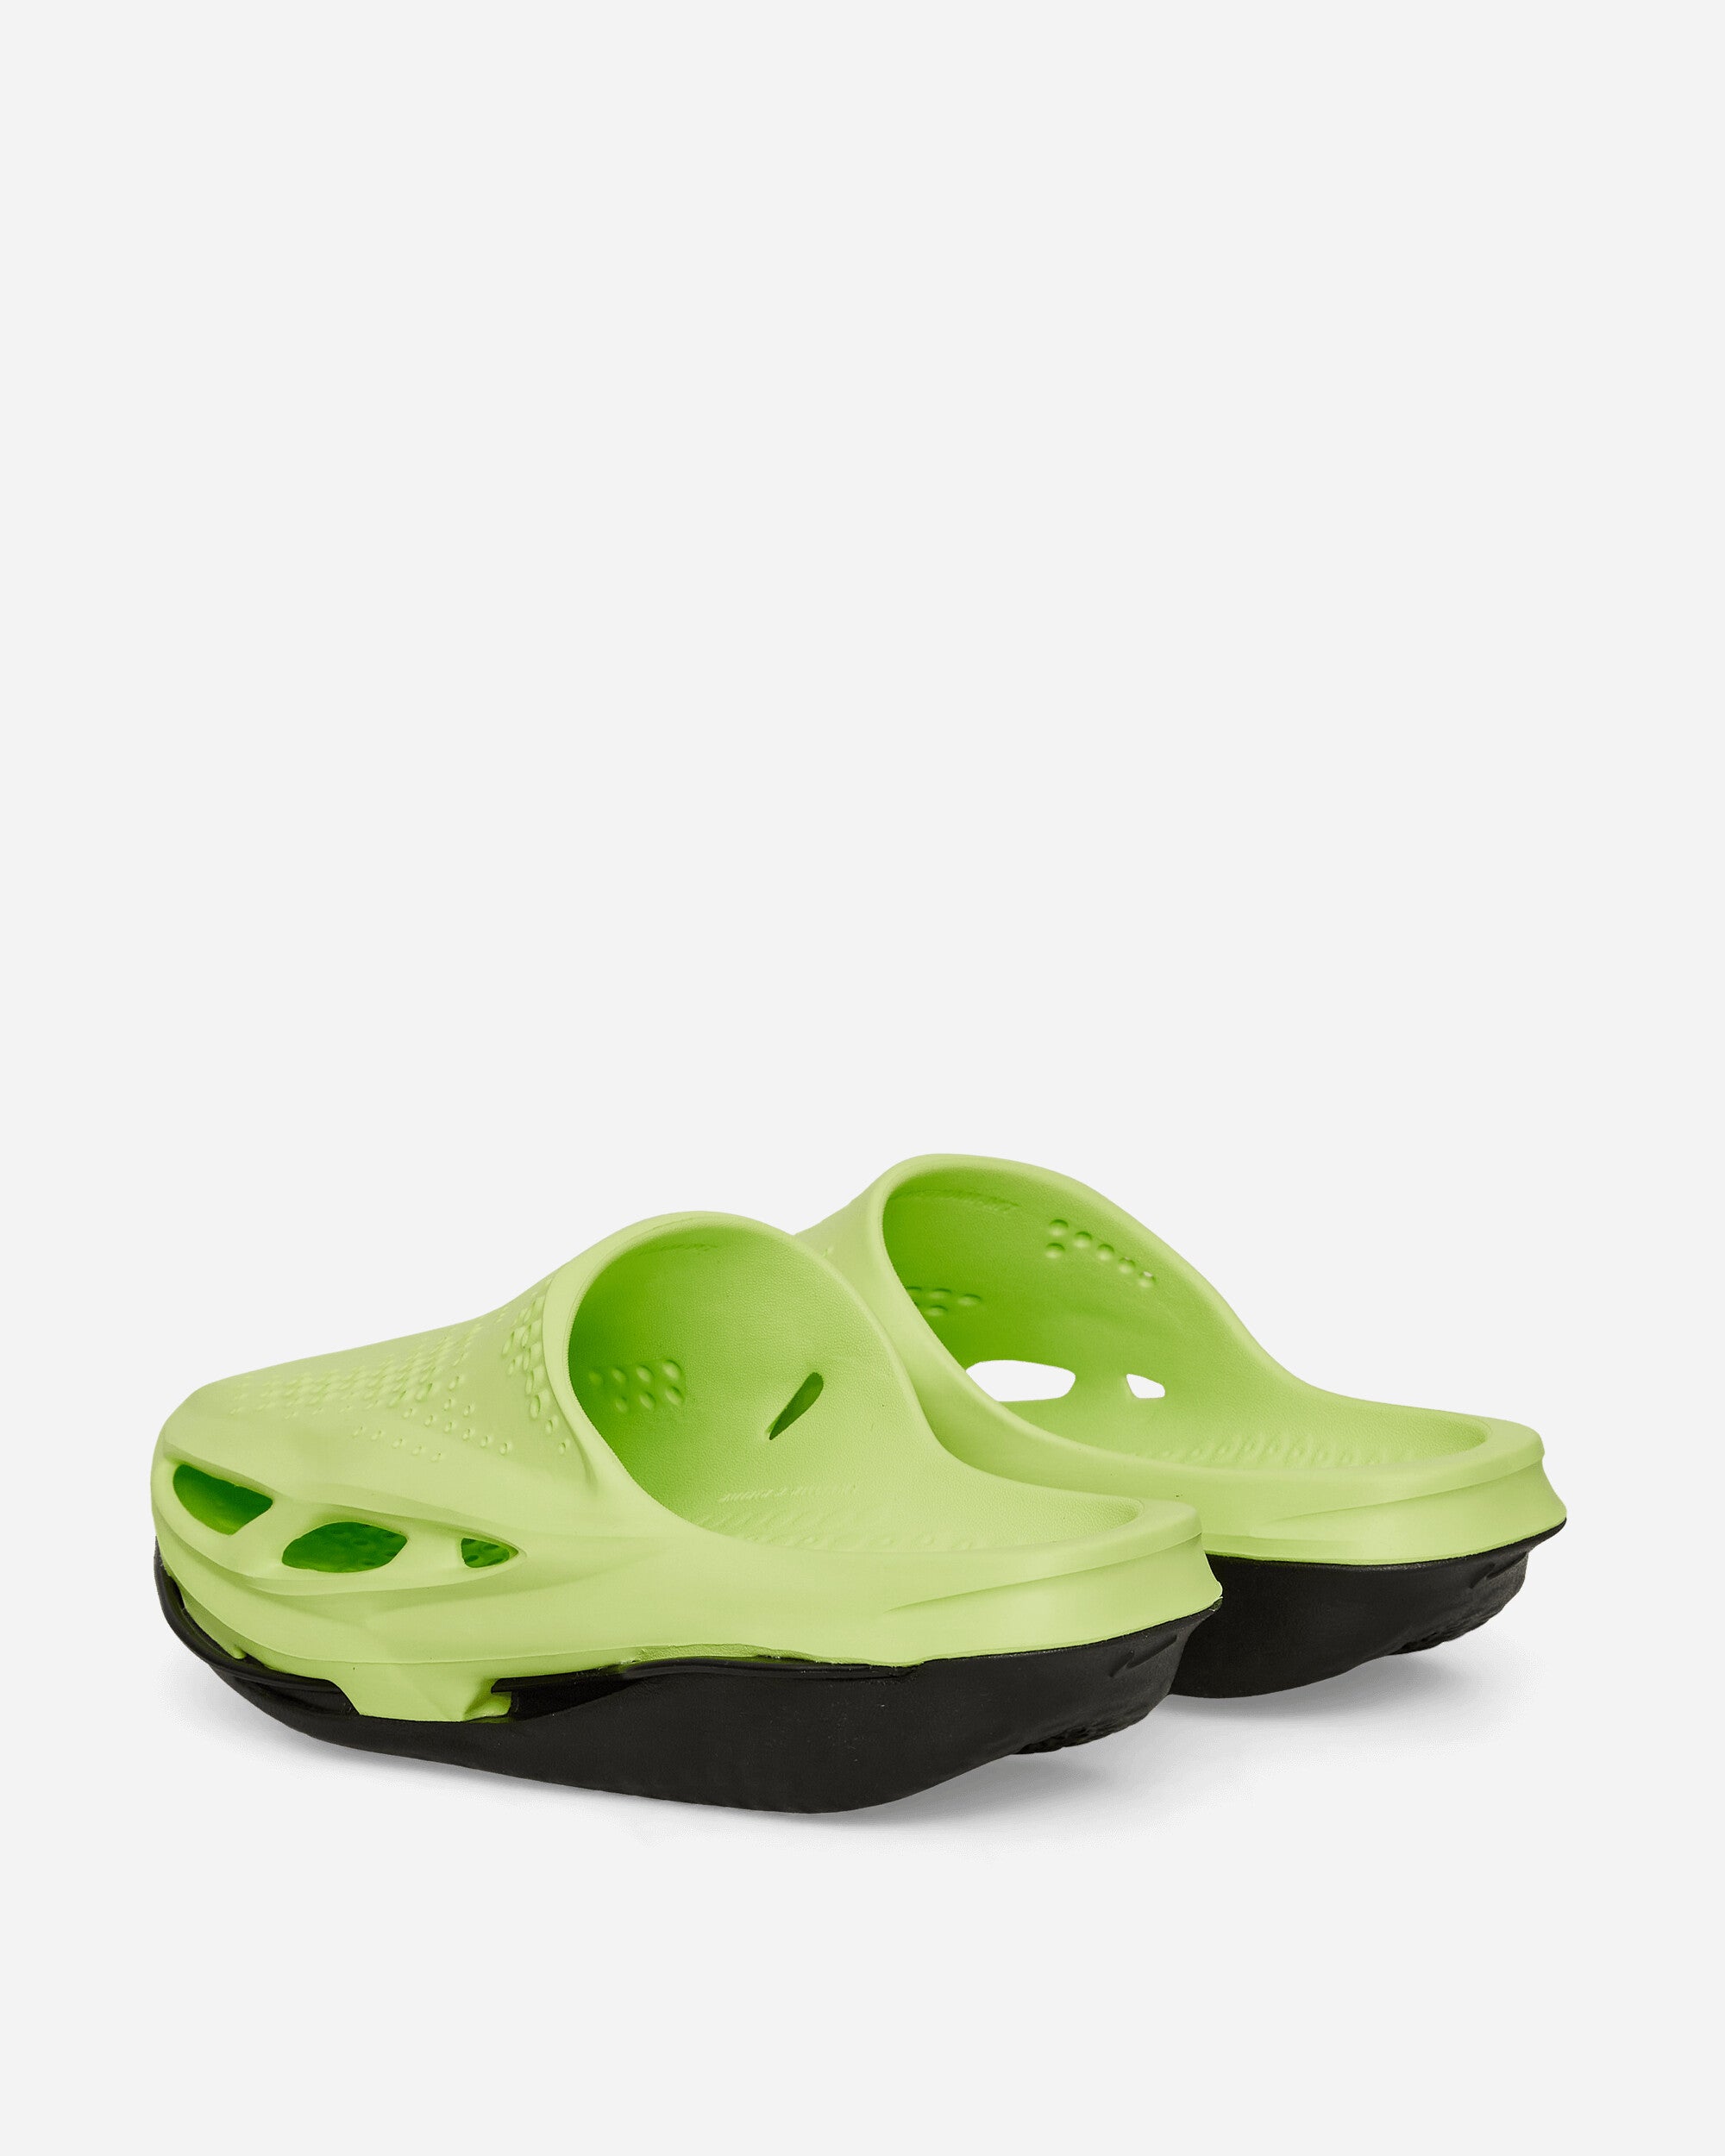 Nike Mmw 5 Slide Volt/Volt-Black Sandals and Slides Slides DH1258-700